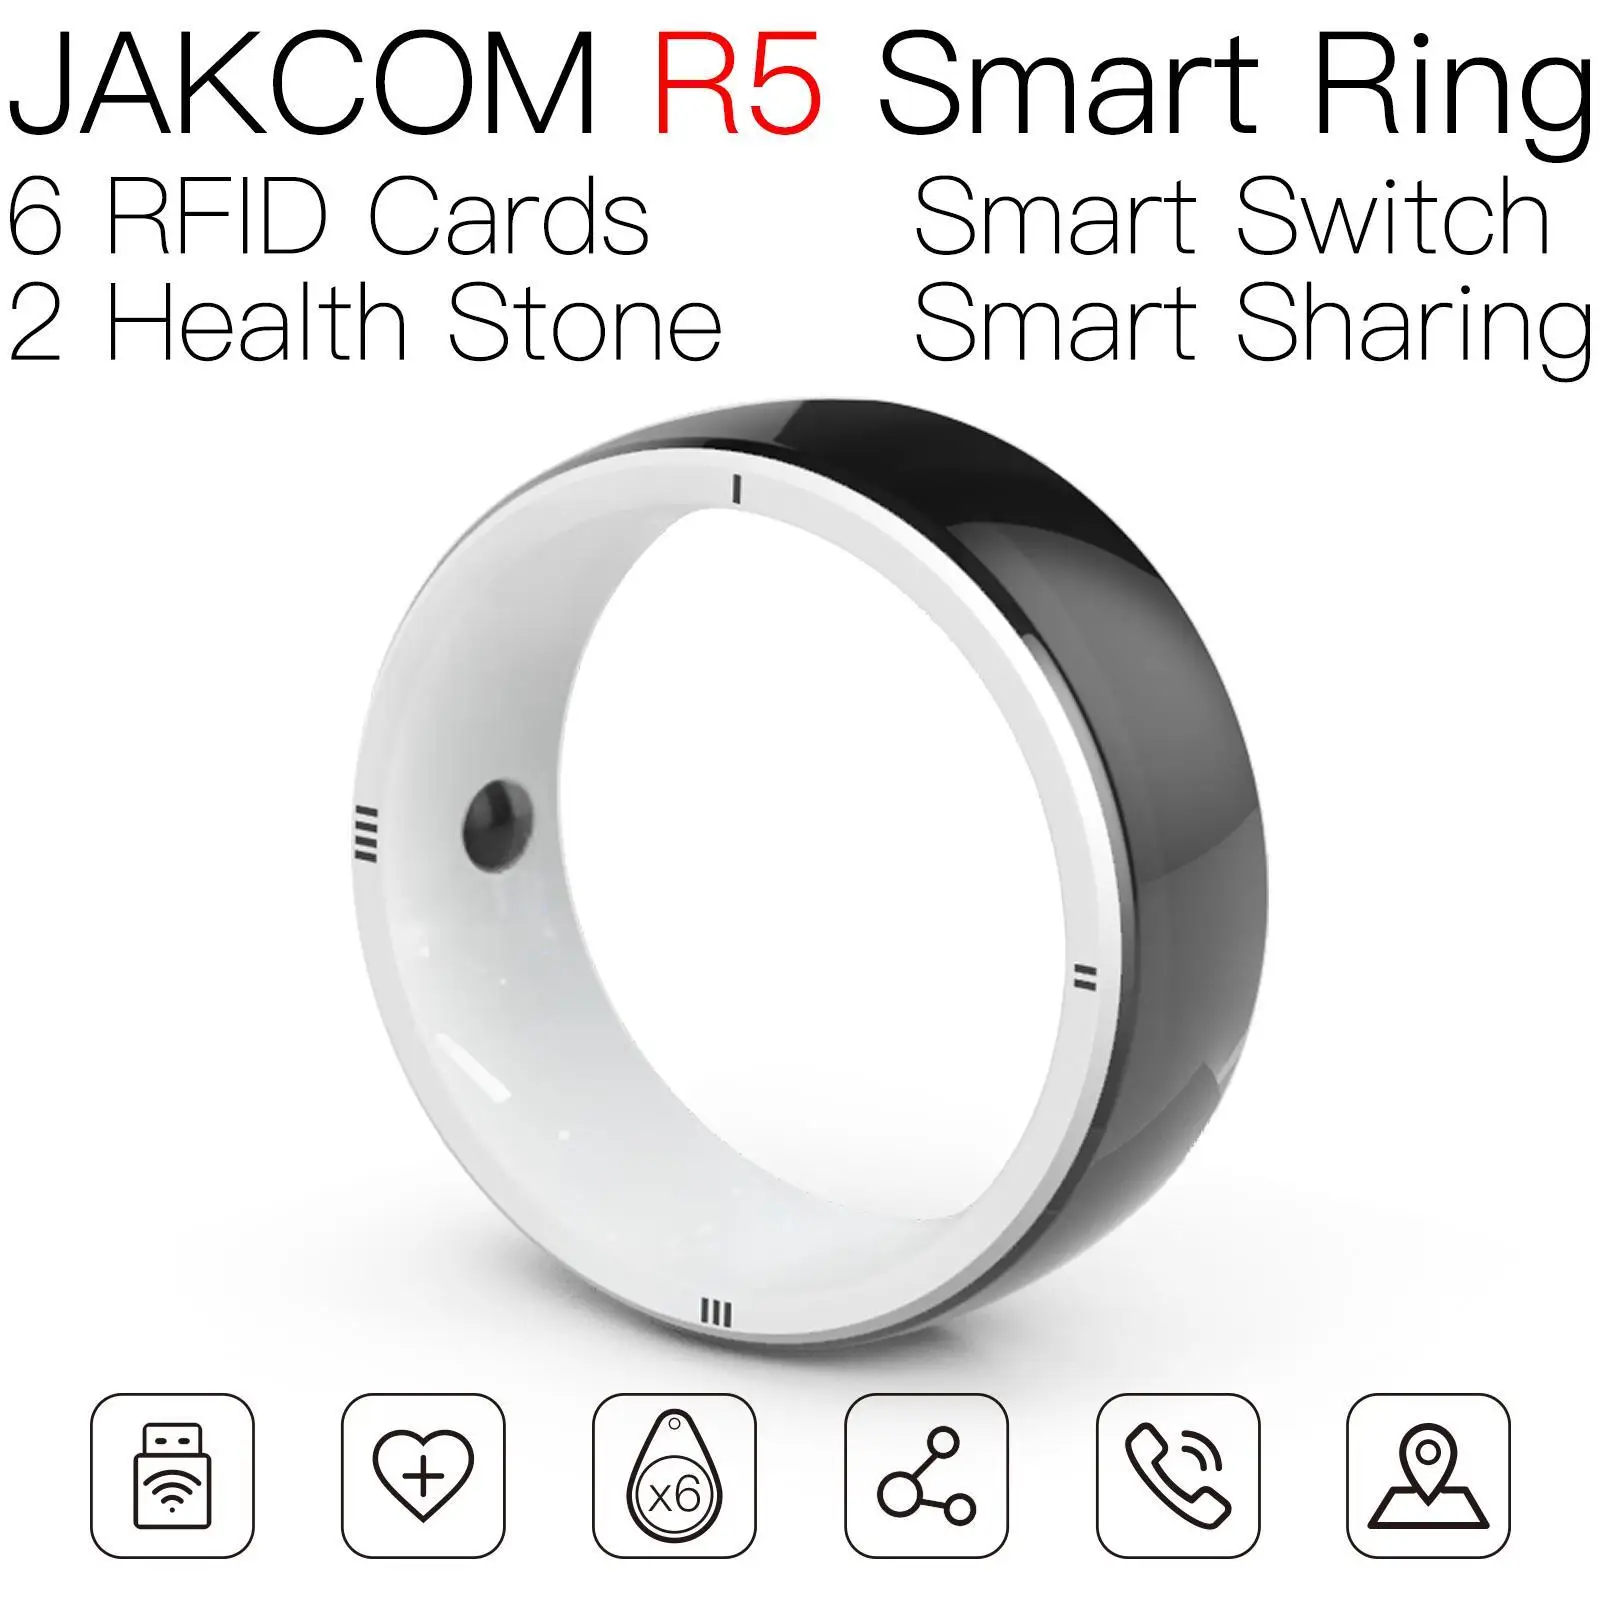 

Умное кольцо JAKCOM R5, новый продукт как карта контроля доступа